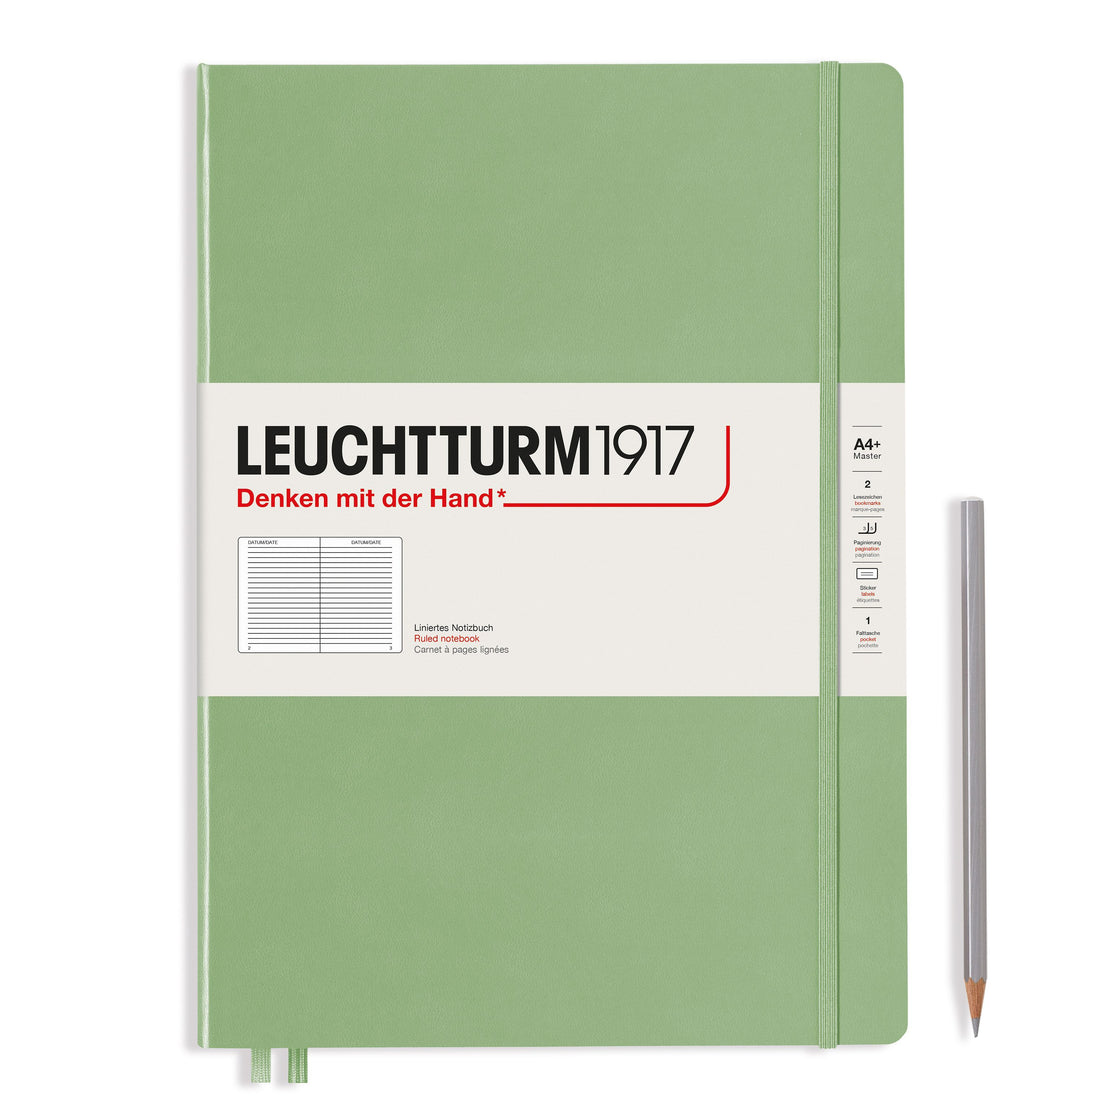 A4 Slim Ruled Notebook, Leuchtturm1917